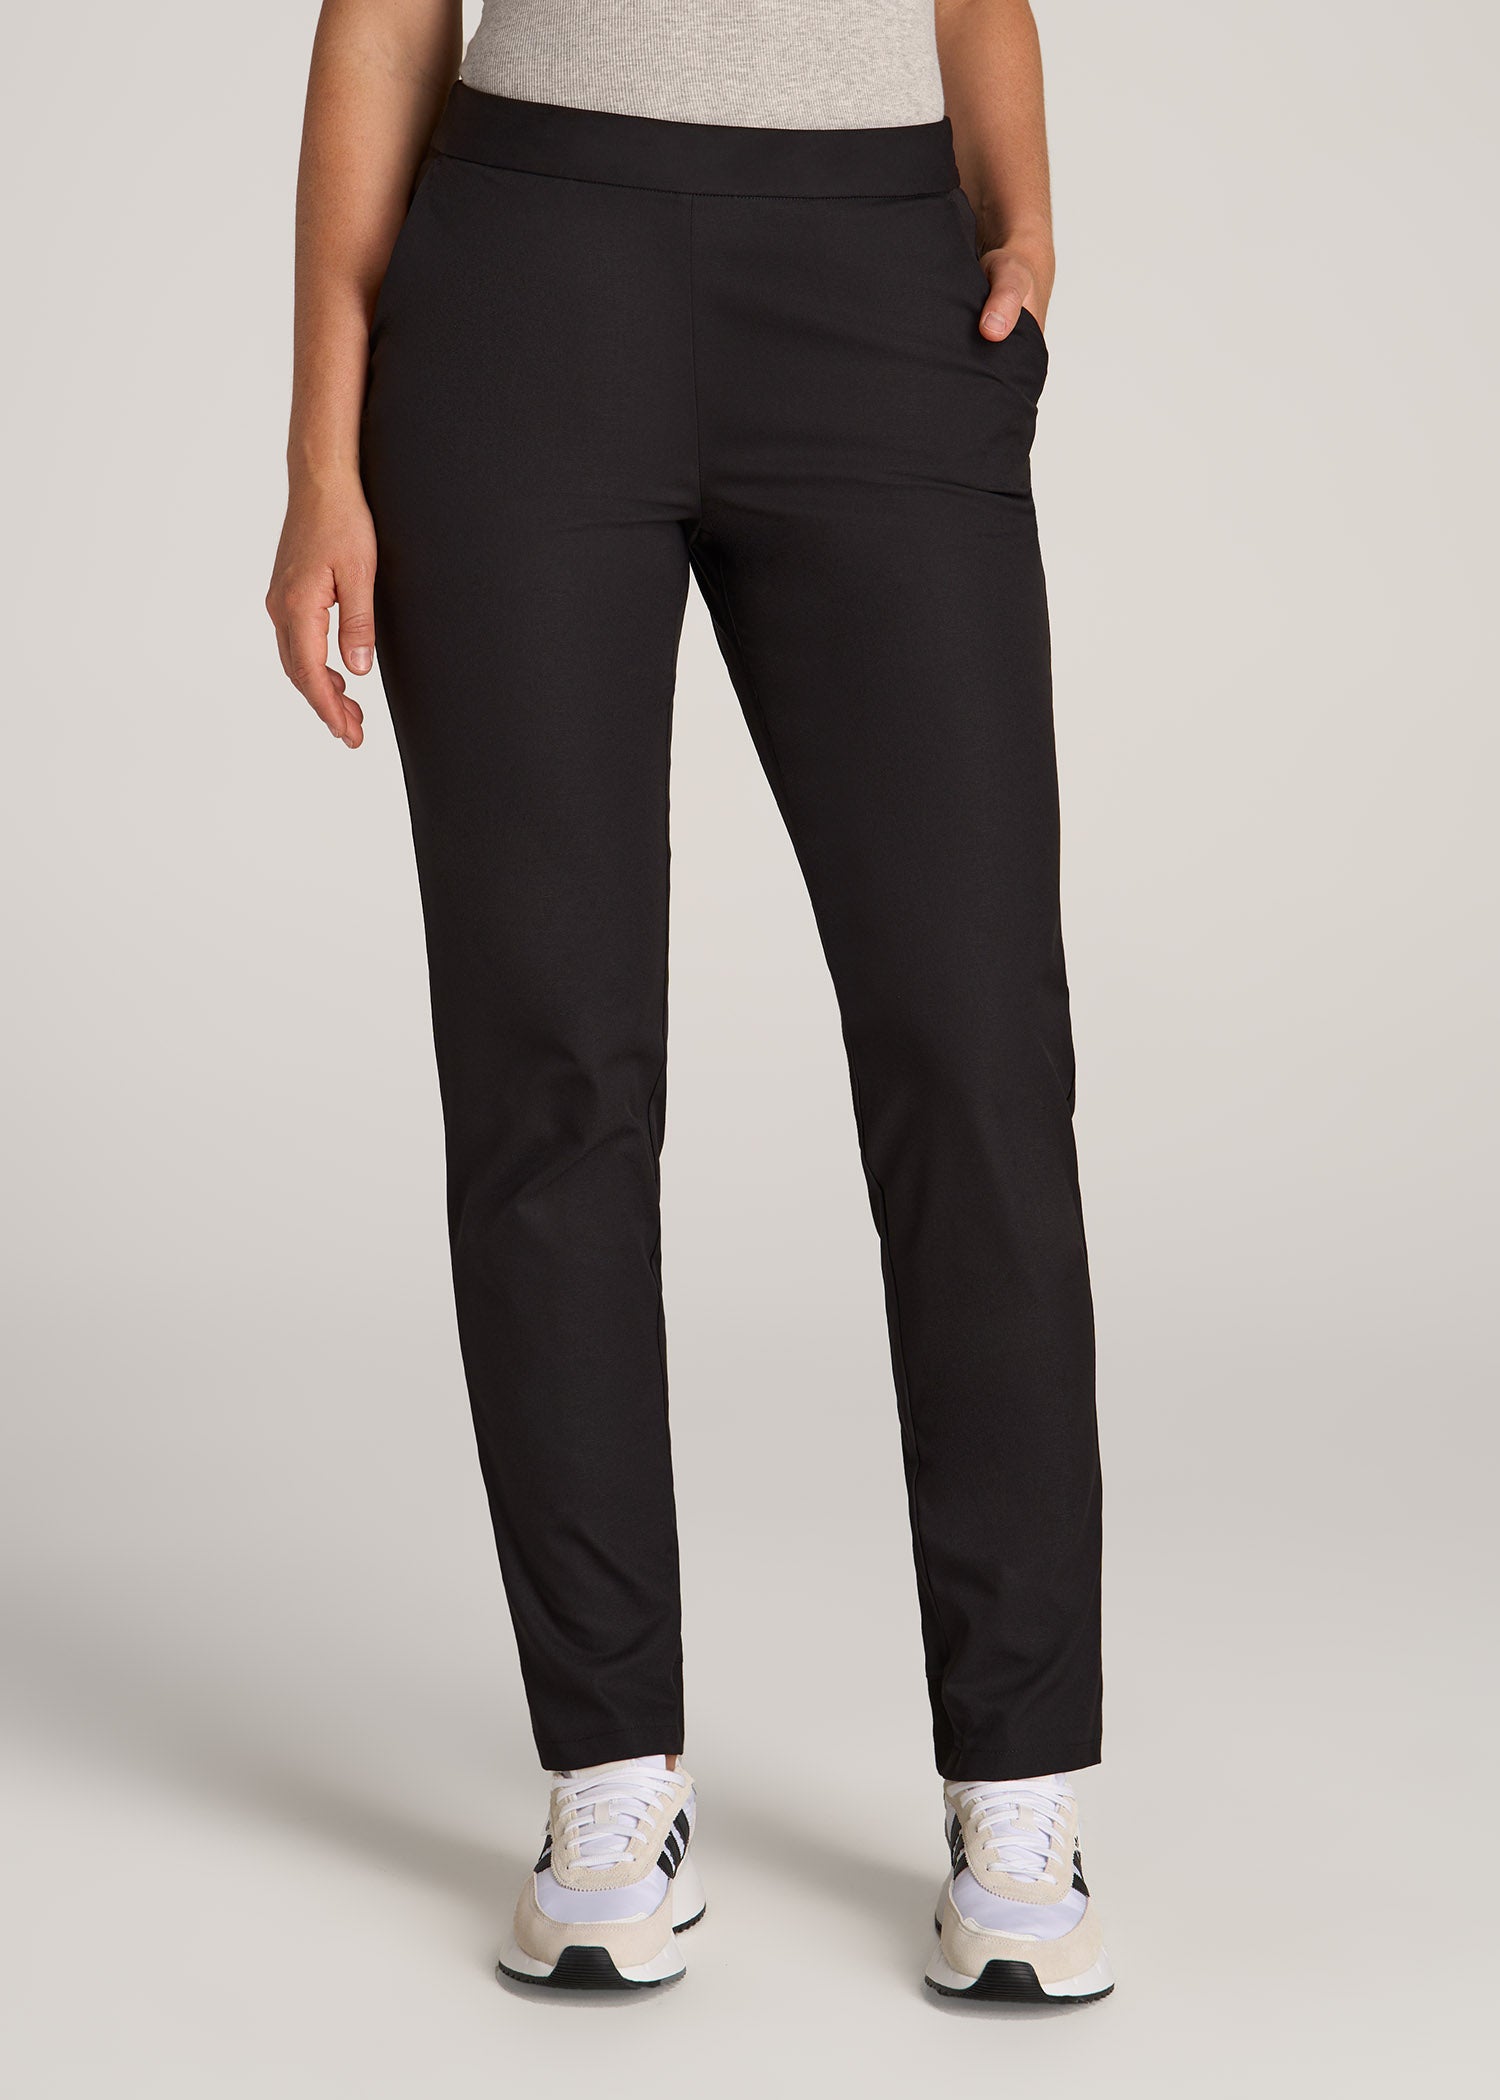 Pull-on Traveler Pants 2.0 for Tall Women in Black